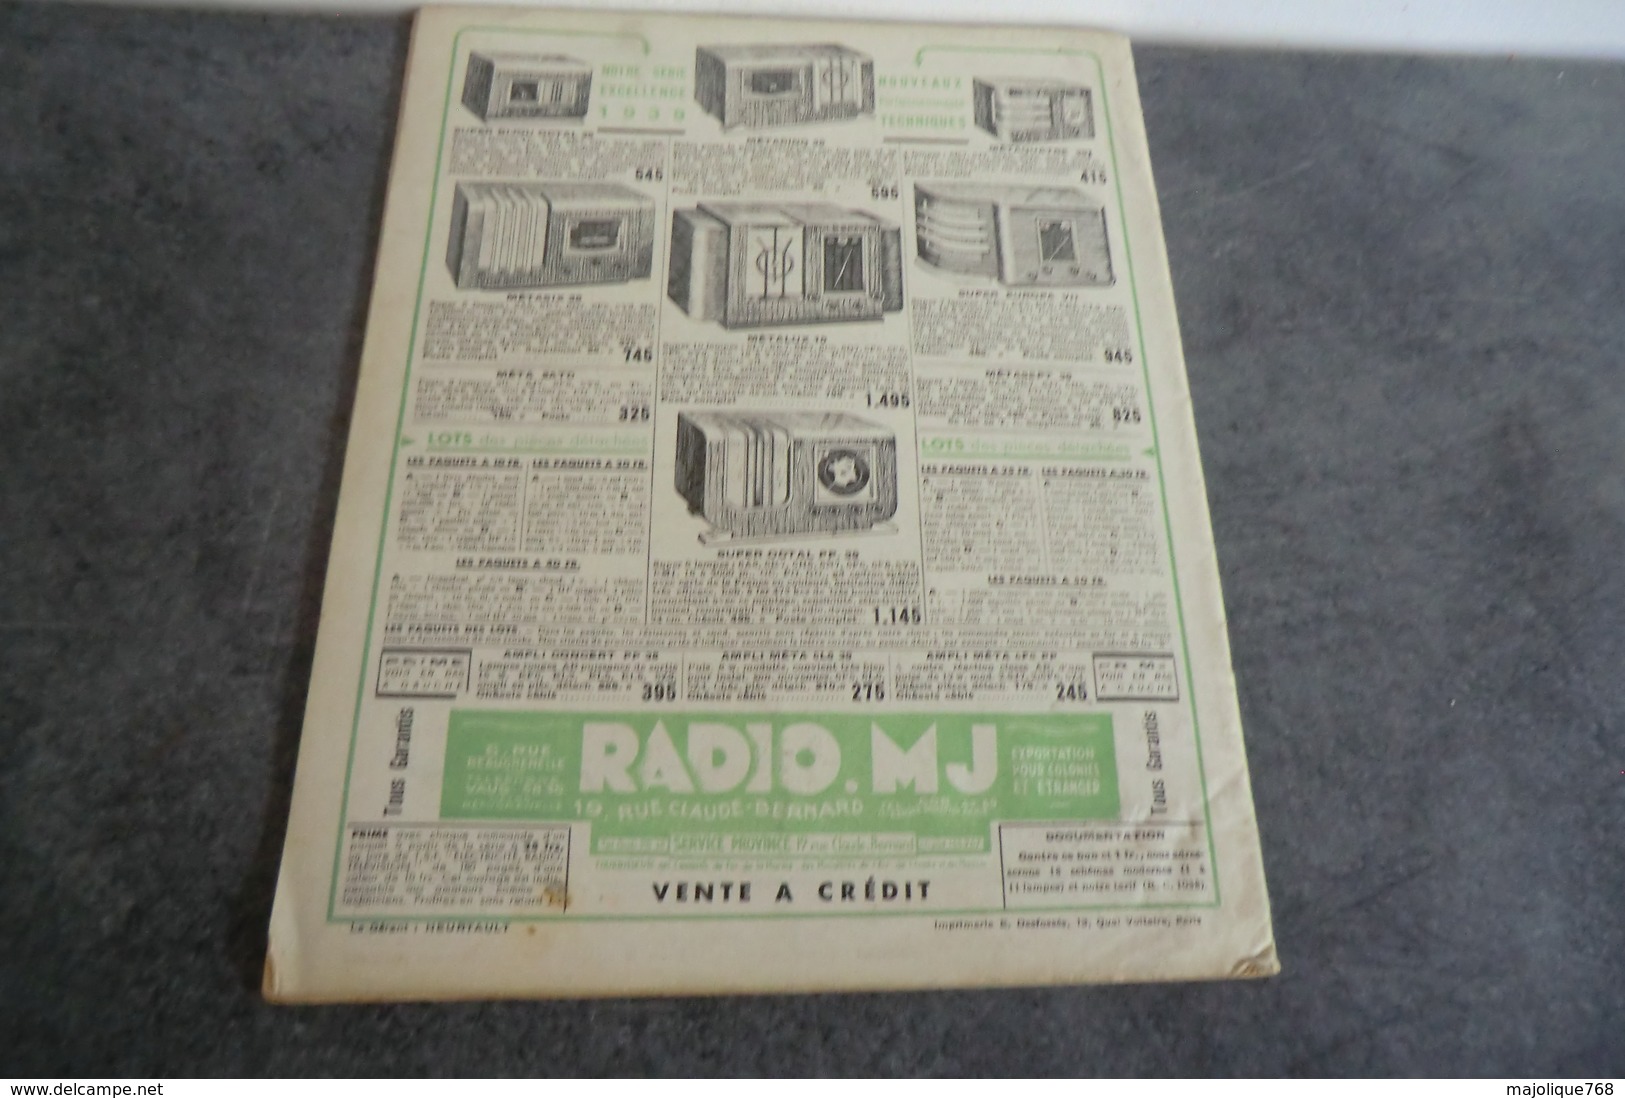 Revue Radio Construction N°25 - 1 Octobre 1938 - - Bauteile